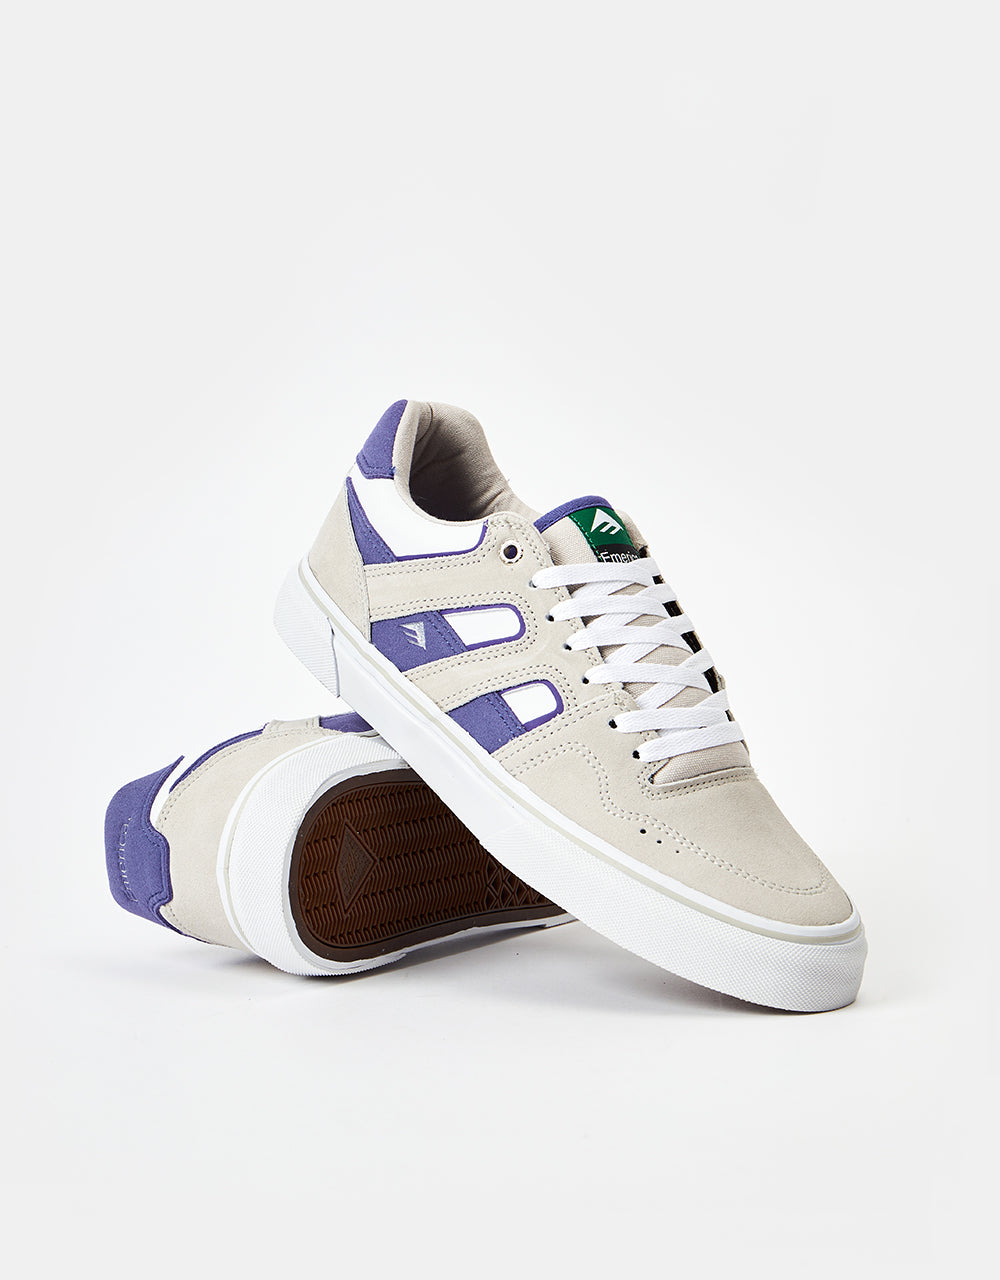 Emerica Tilt G6 Vulc Skate Shoes - Tan/White/Gum